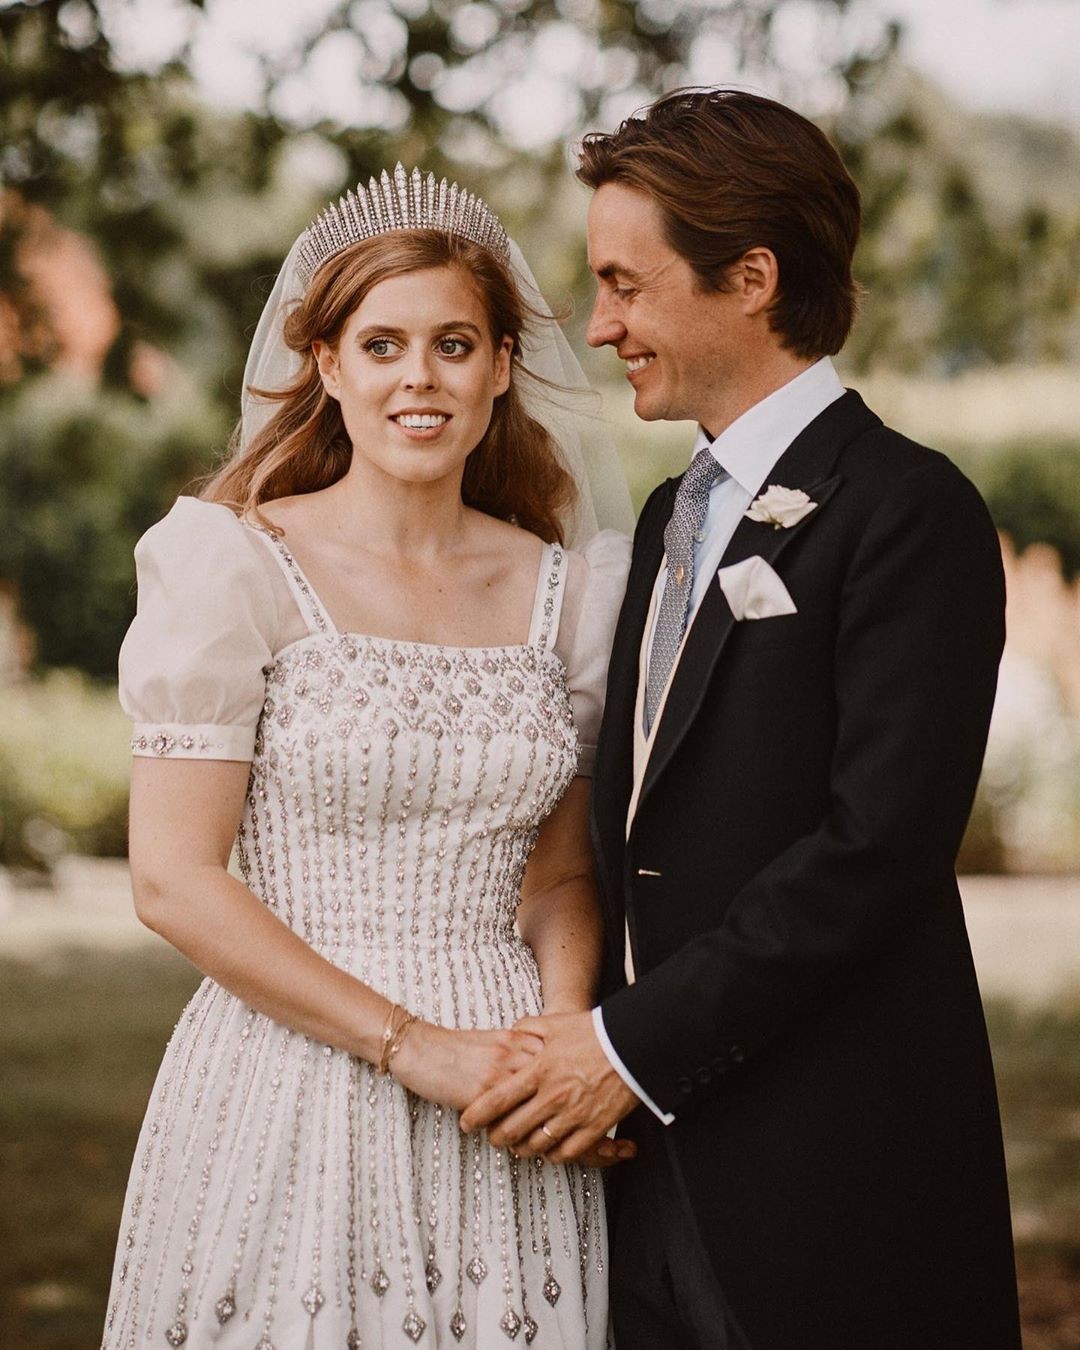 O casamento real de Beatrice de York e Edoardo Mapelli Mozzi  (Foto: Divulgação)